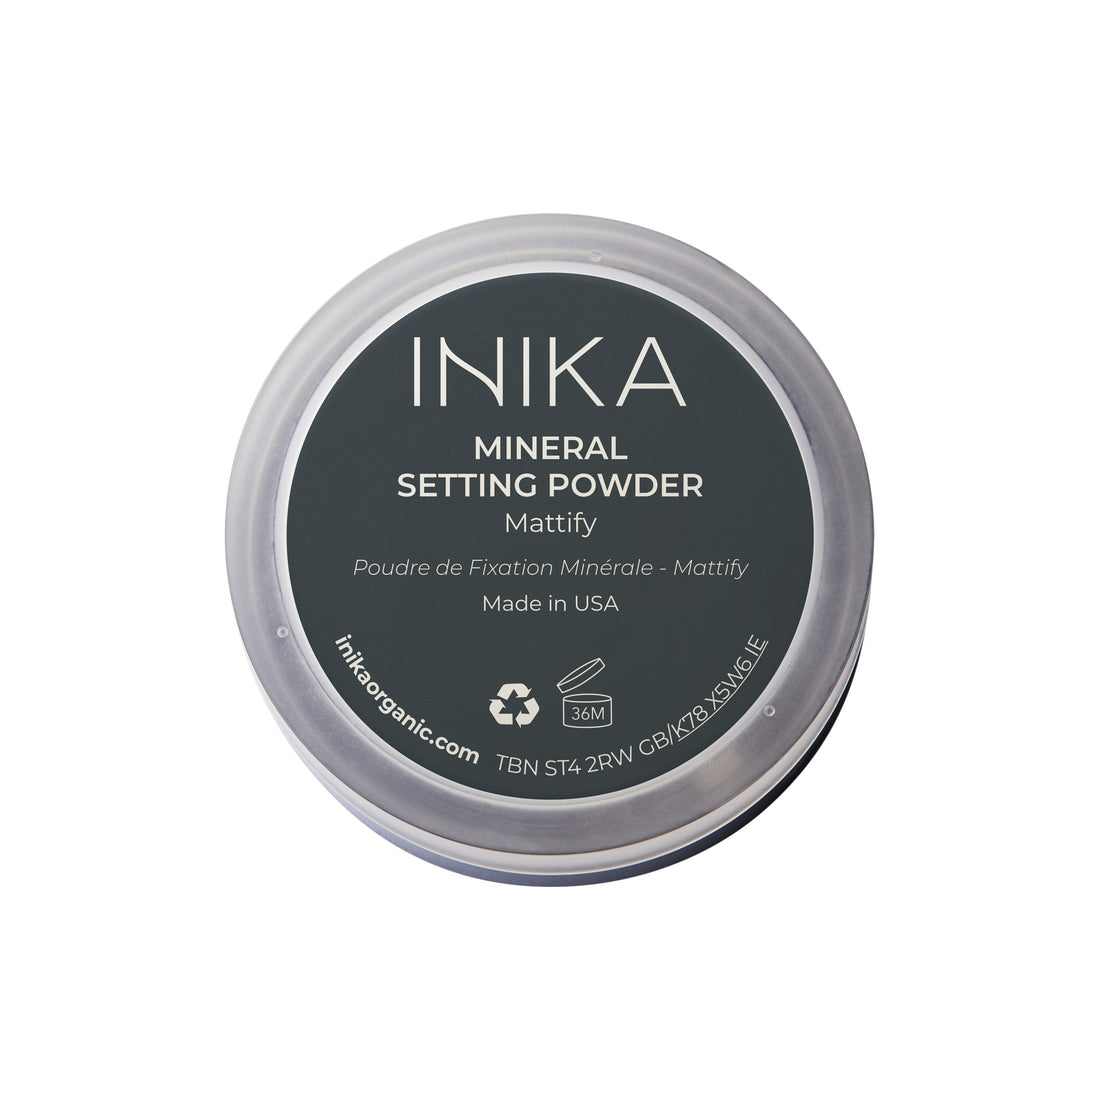 INIKA Organic Mattifying Setting Powder